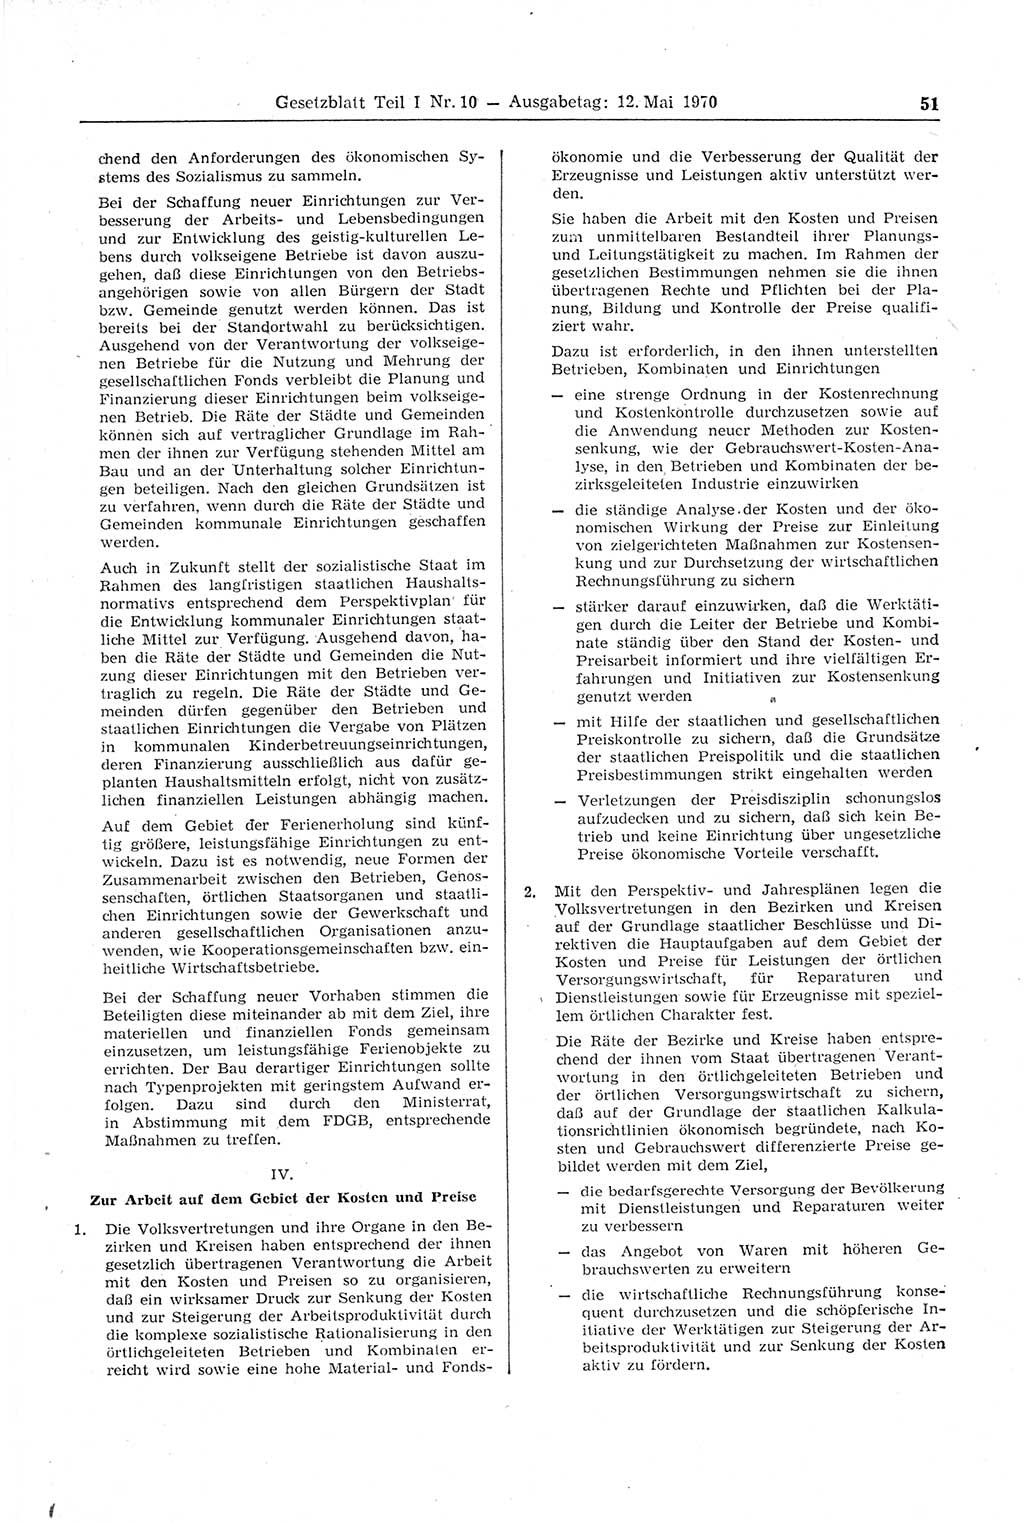 Gesetzblatt (GBl.) der Deutschen Demokratischen Republik (DDR) Teil Ⅰ 1970, Seite 51 (GBl. DDR Ⅰ 1970, S. 51)